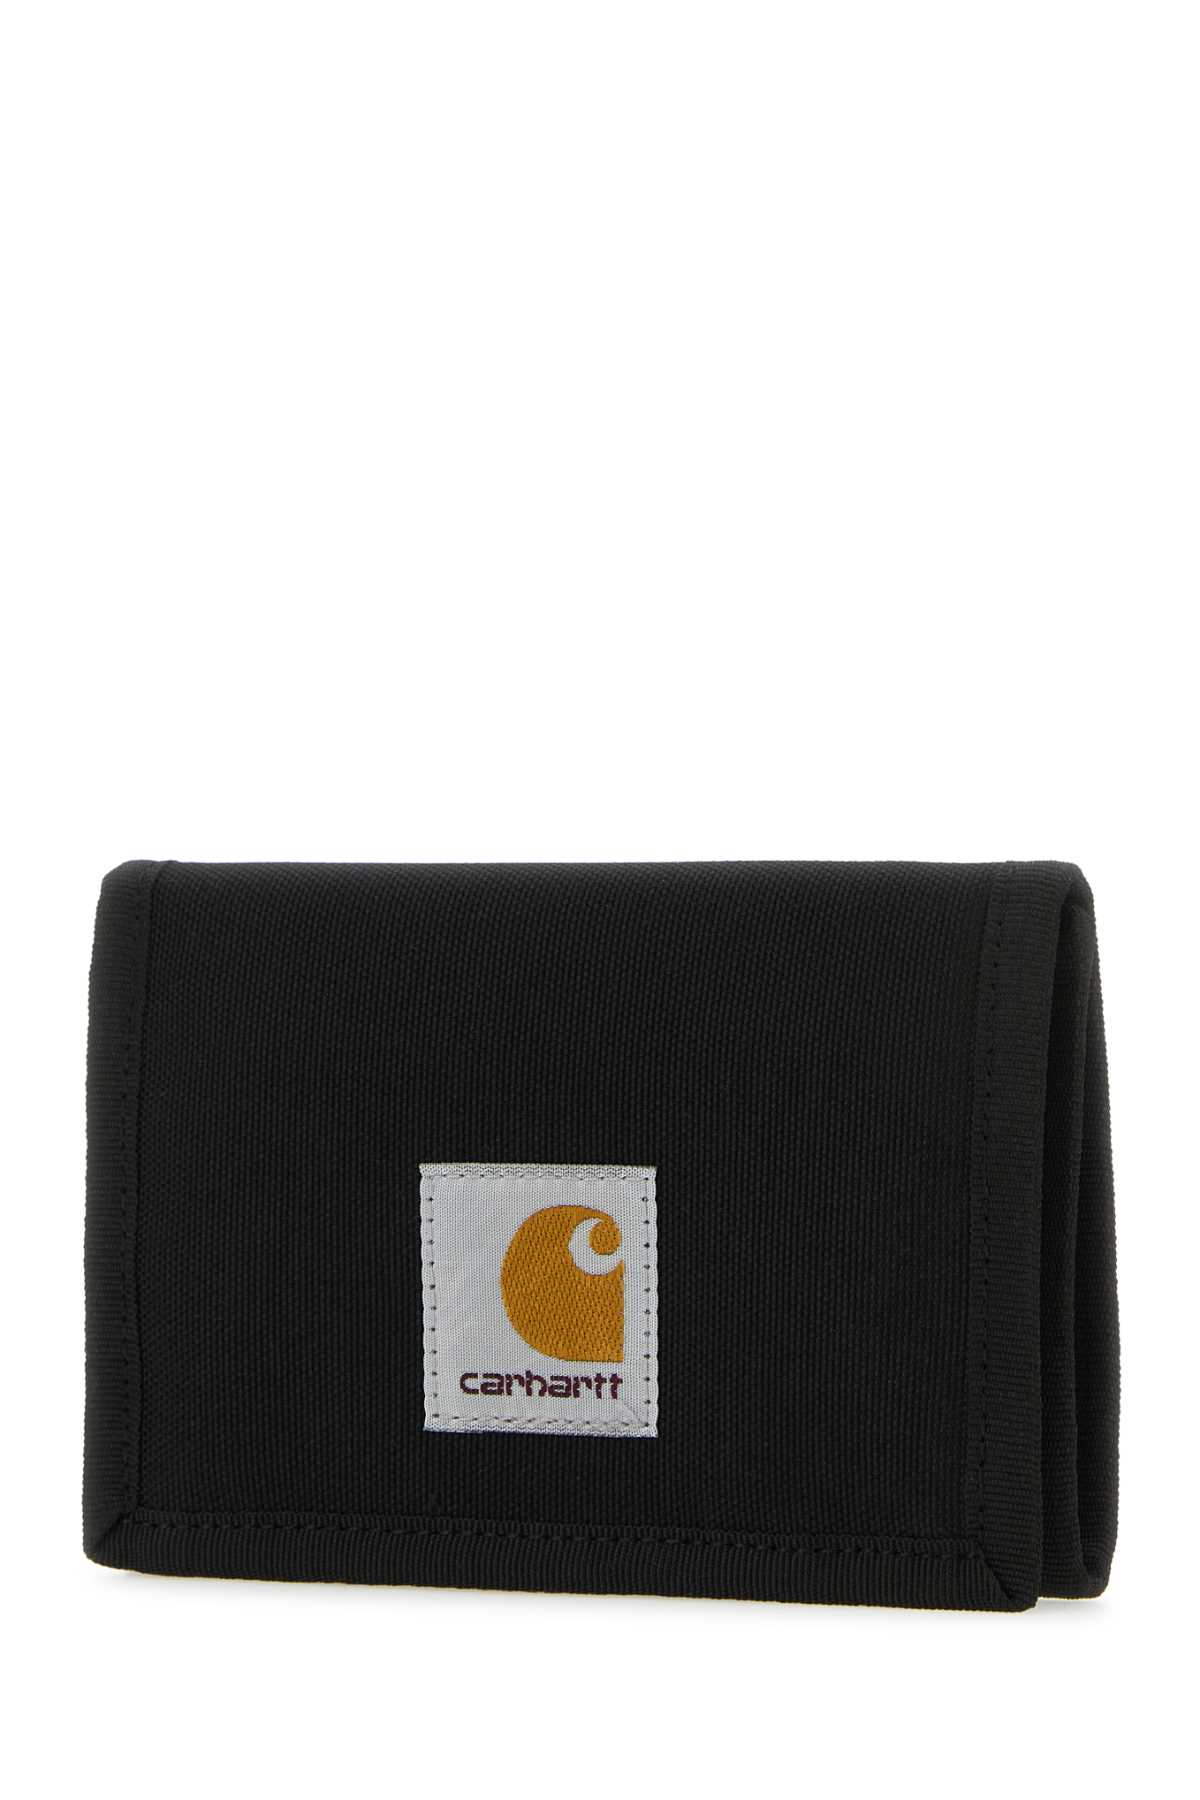 Carhartt Black Fabric Alec Wallet